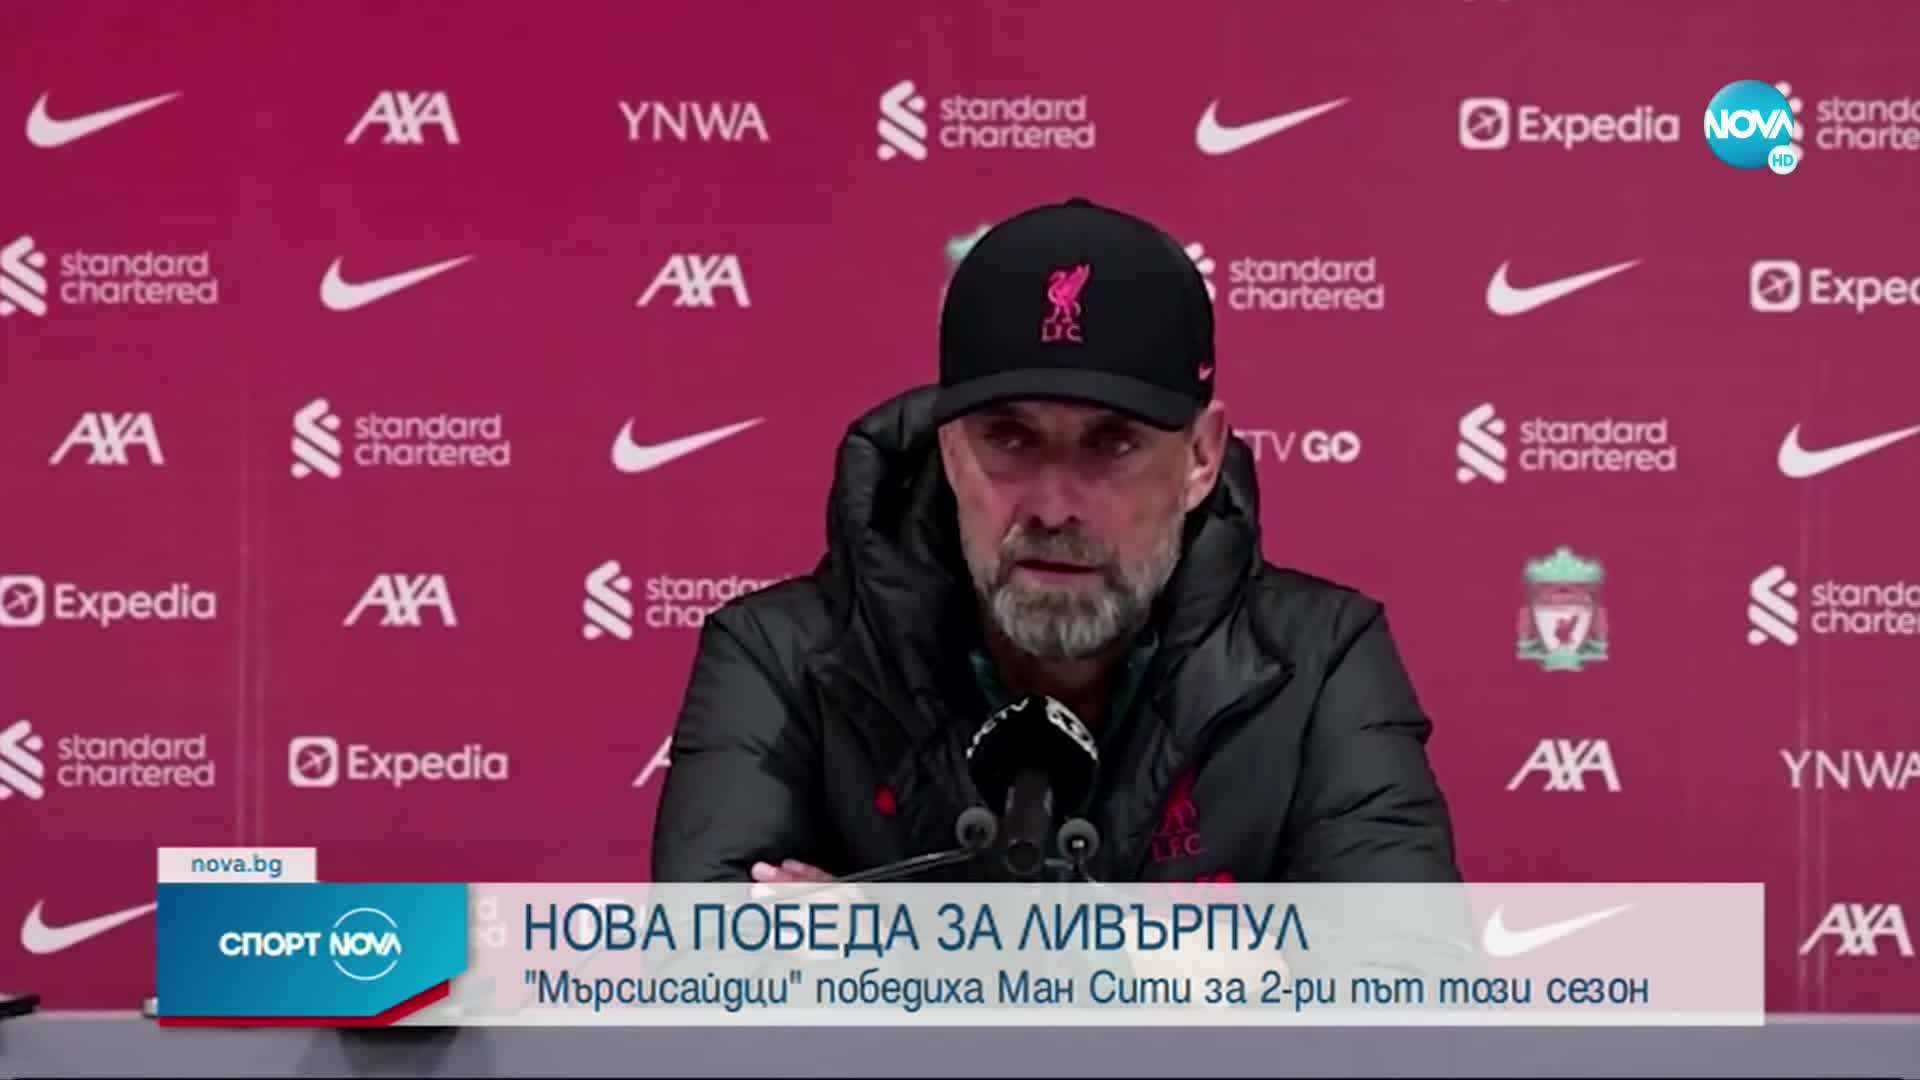 Юрген Клоп и Пеп Гуардиола с любопитни коментари след края на мача